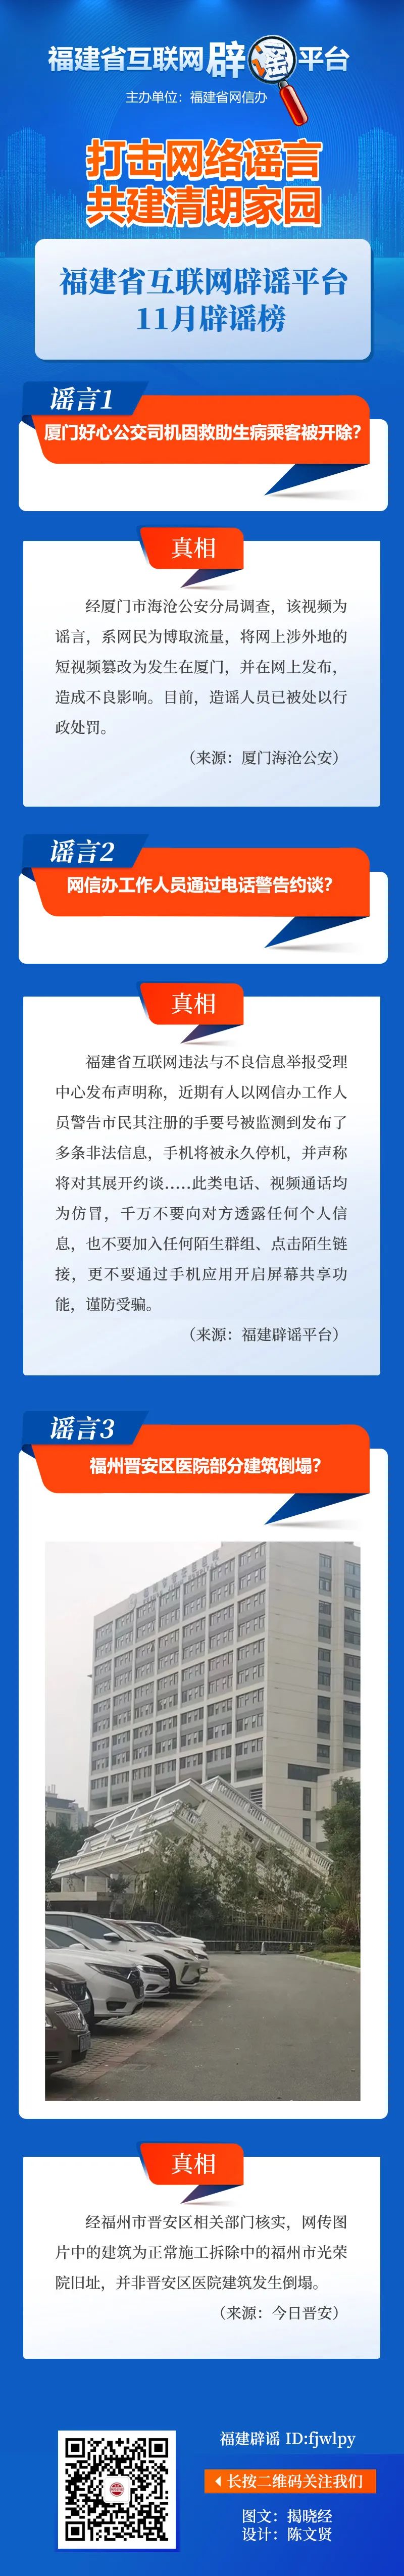 福建省互联网辟谣平台11月辟谣榜